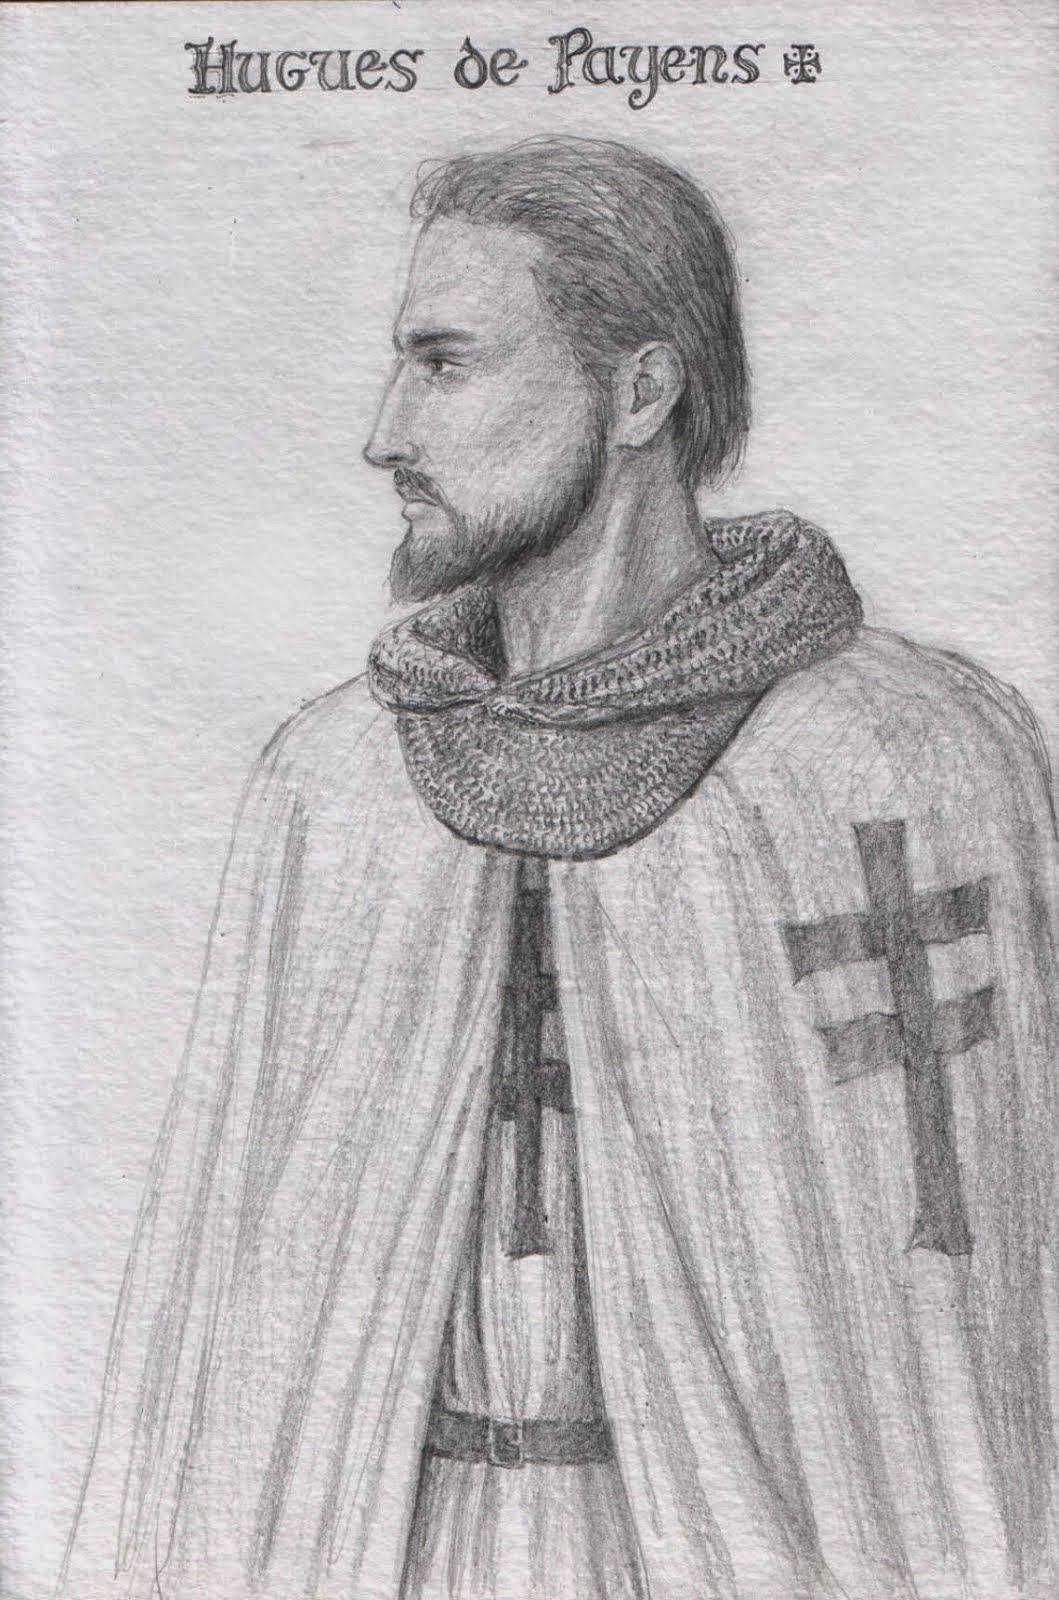 Hugo de Payens 1118 - 1136. Lider del grupo que fundó la Orden y primer Gran Maestre de la misma.